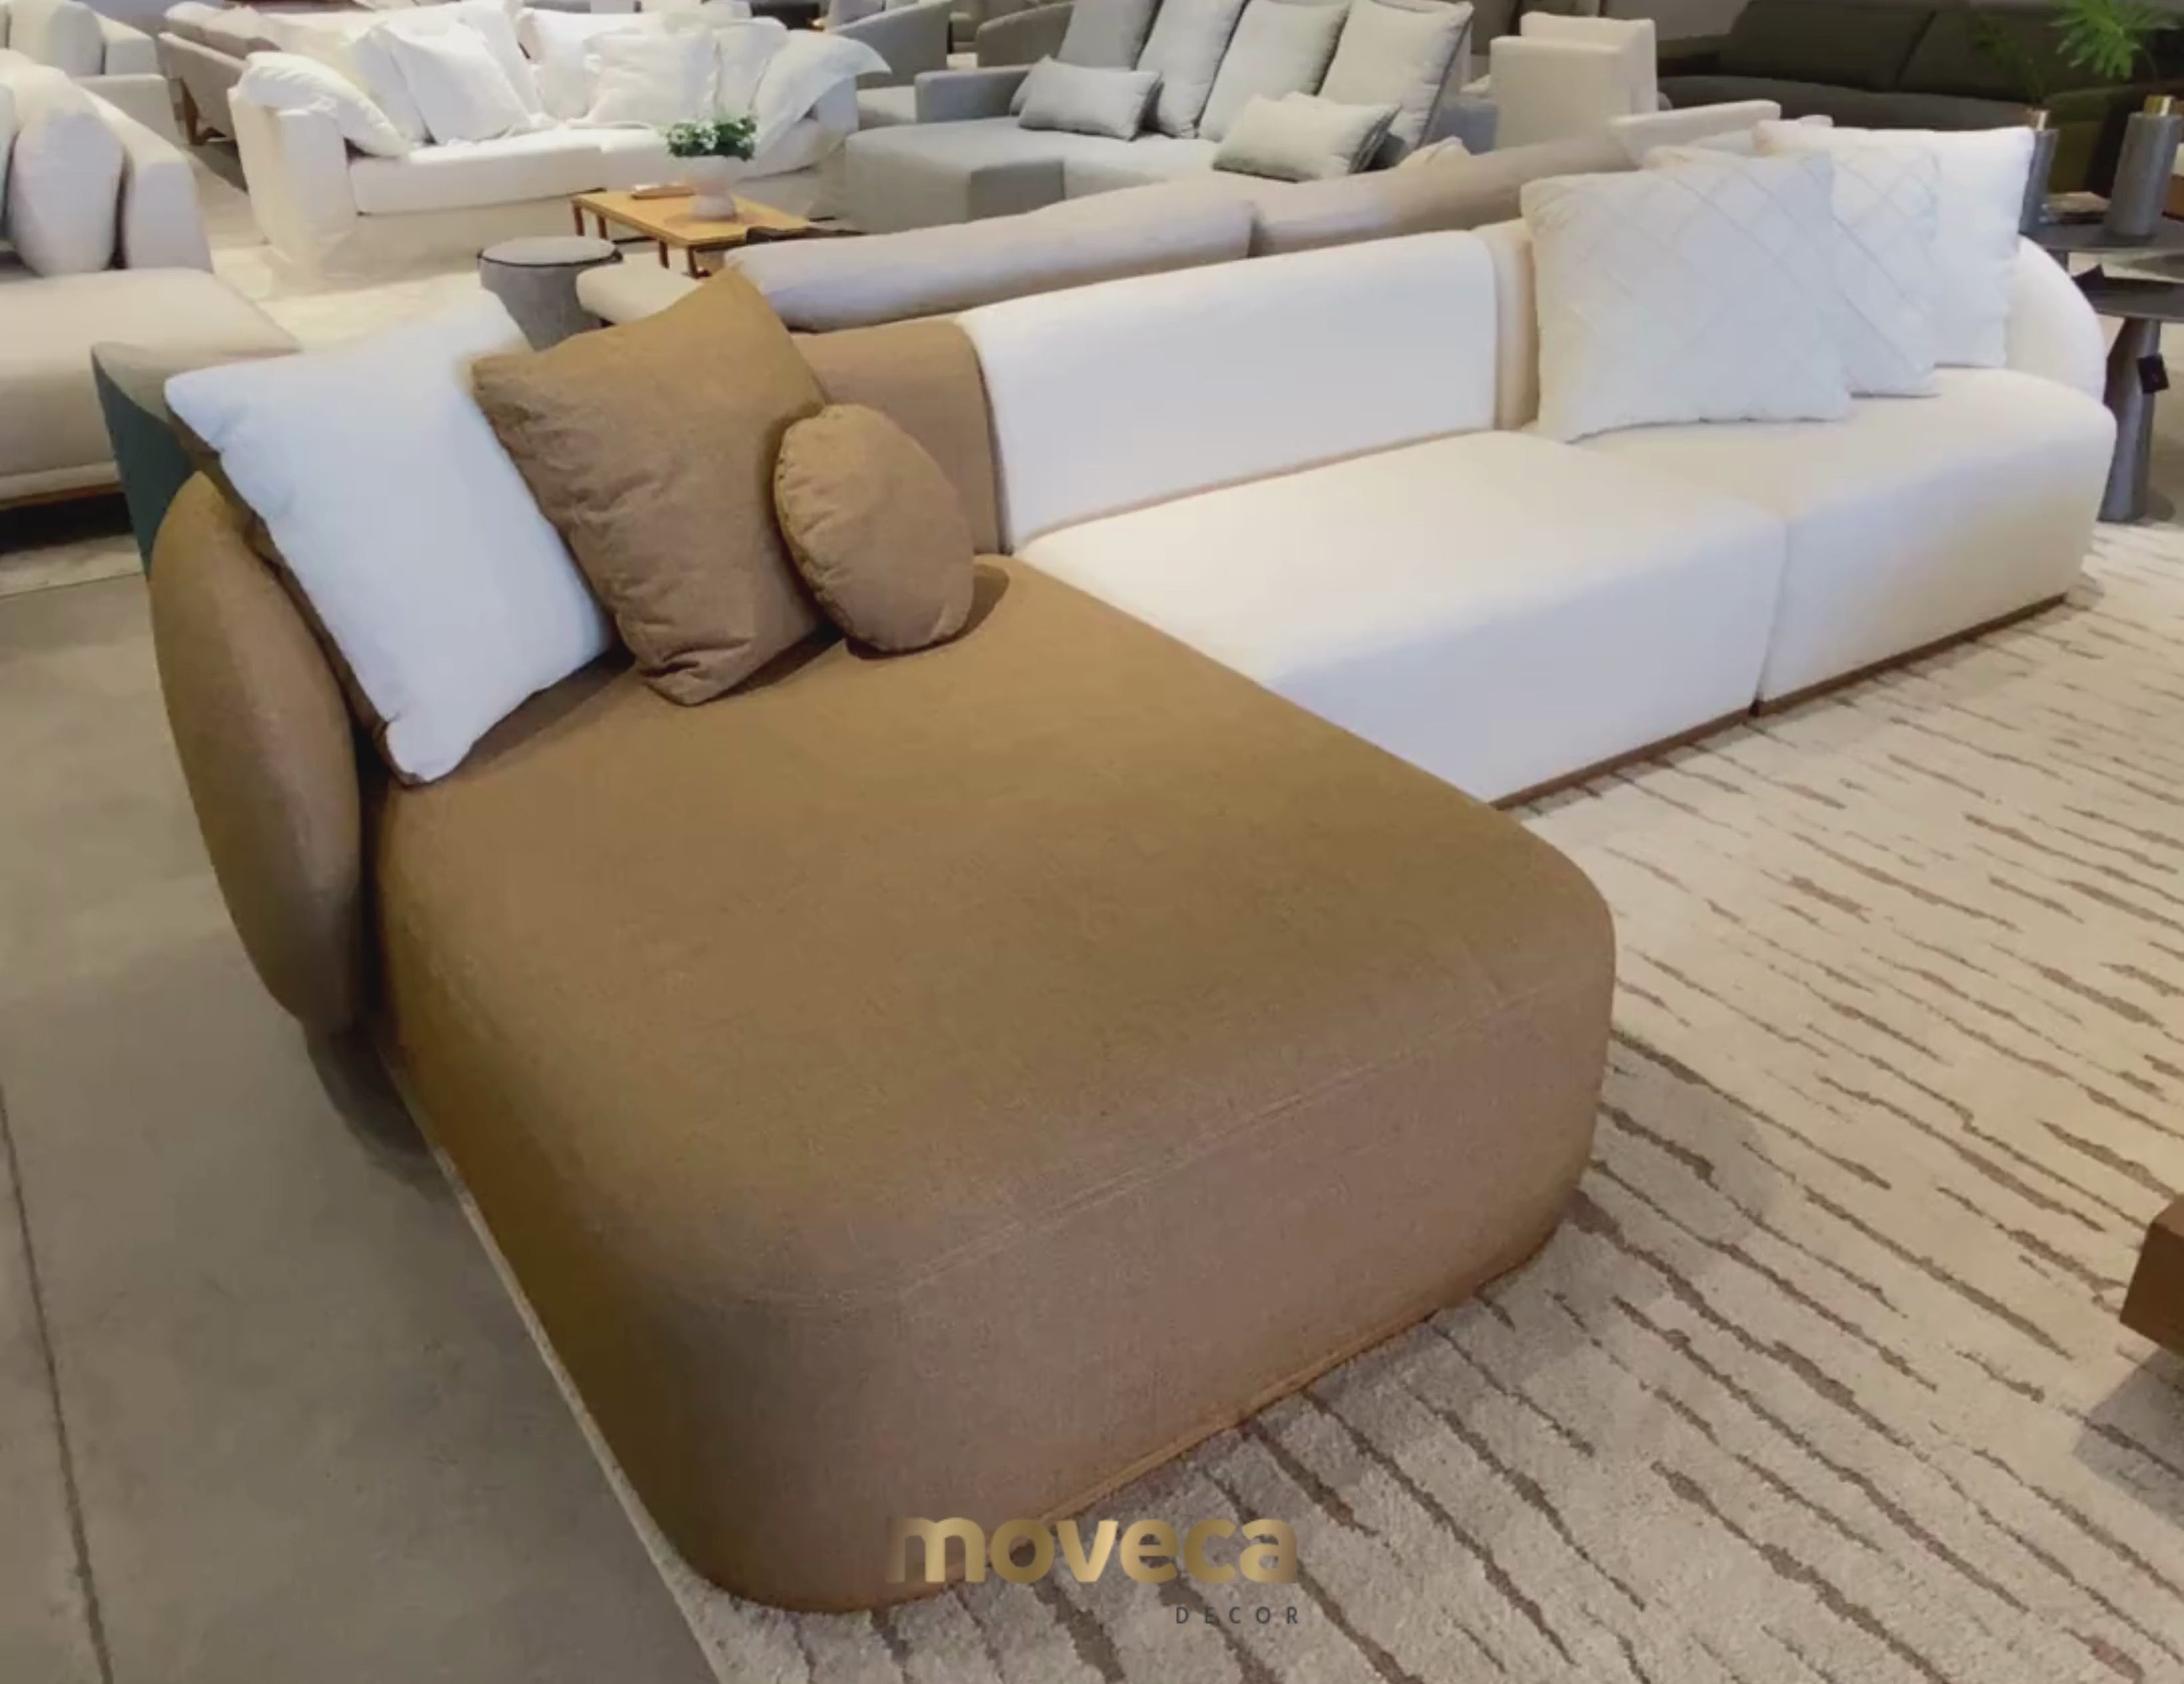 Detalhes suaves e curvas elegantes: sofá Lovely, uma escolha ideal para uma sala elegante.